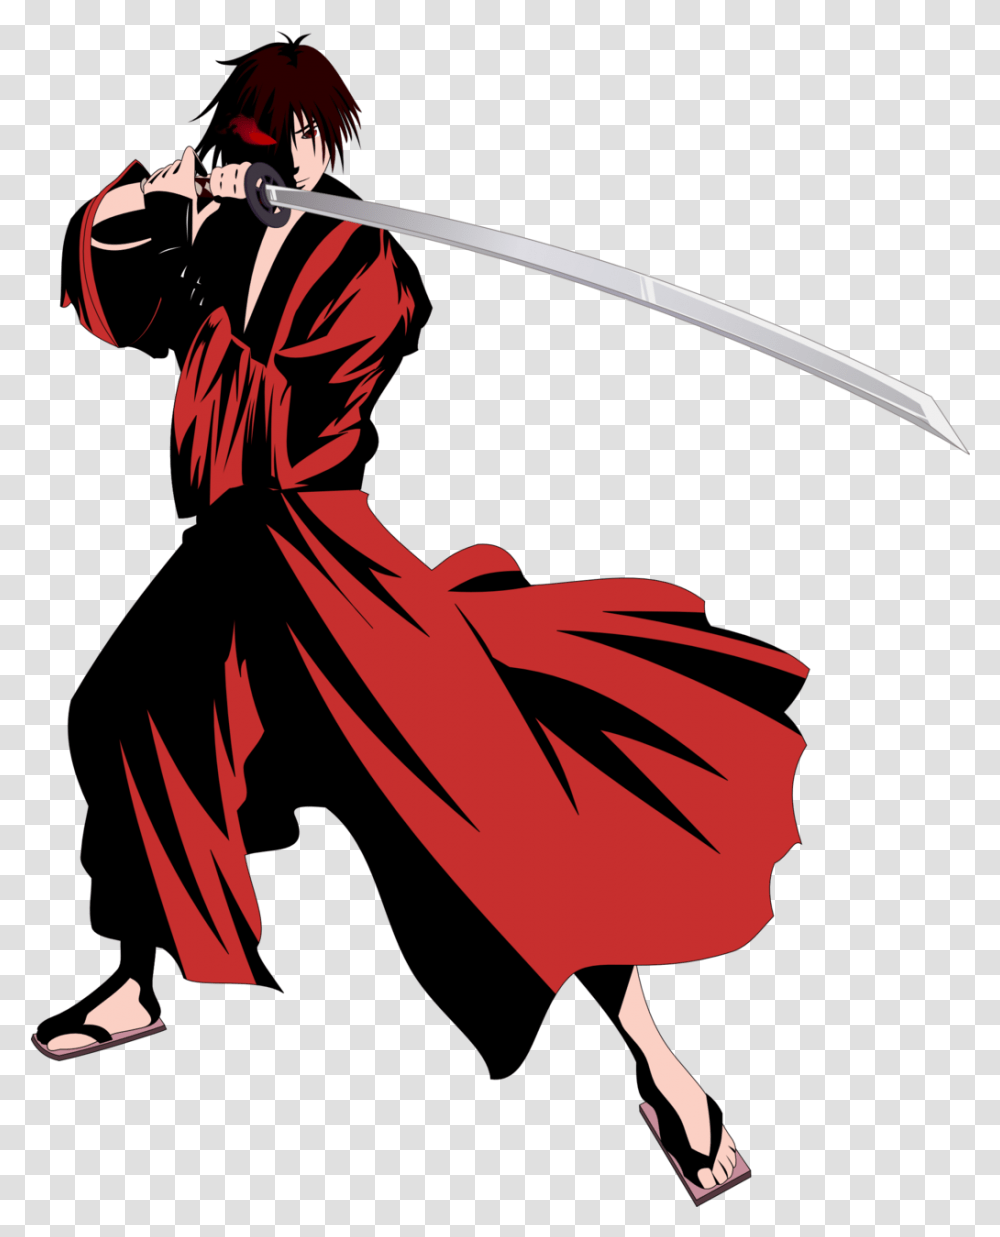 Samurai Image Samurai, Person, Human, Duel, Weapon Transparent Png